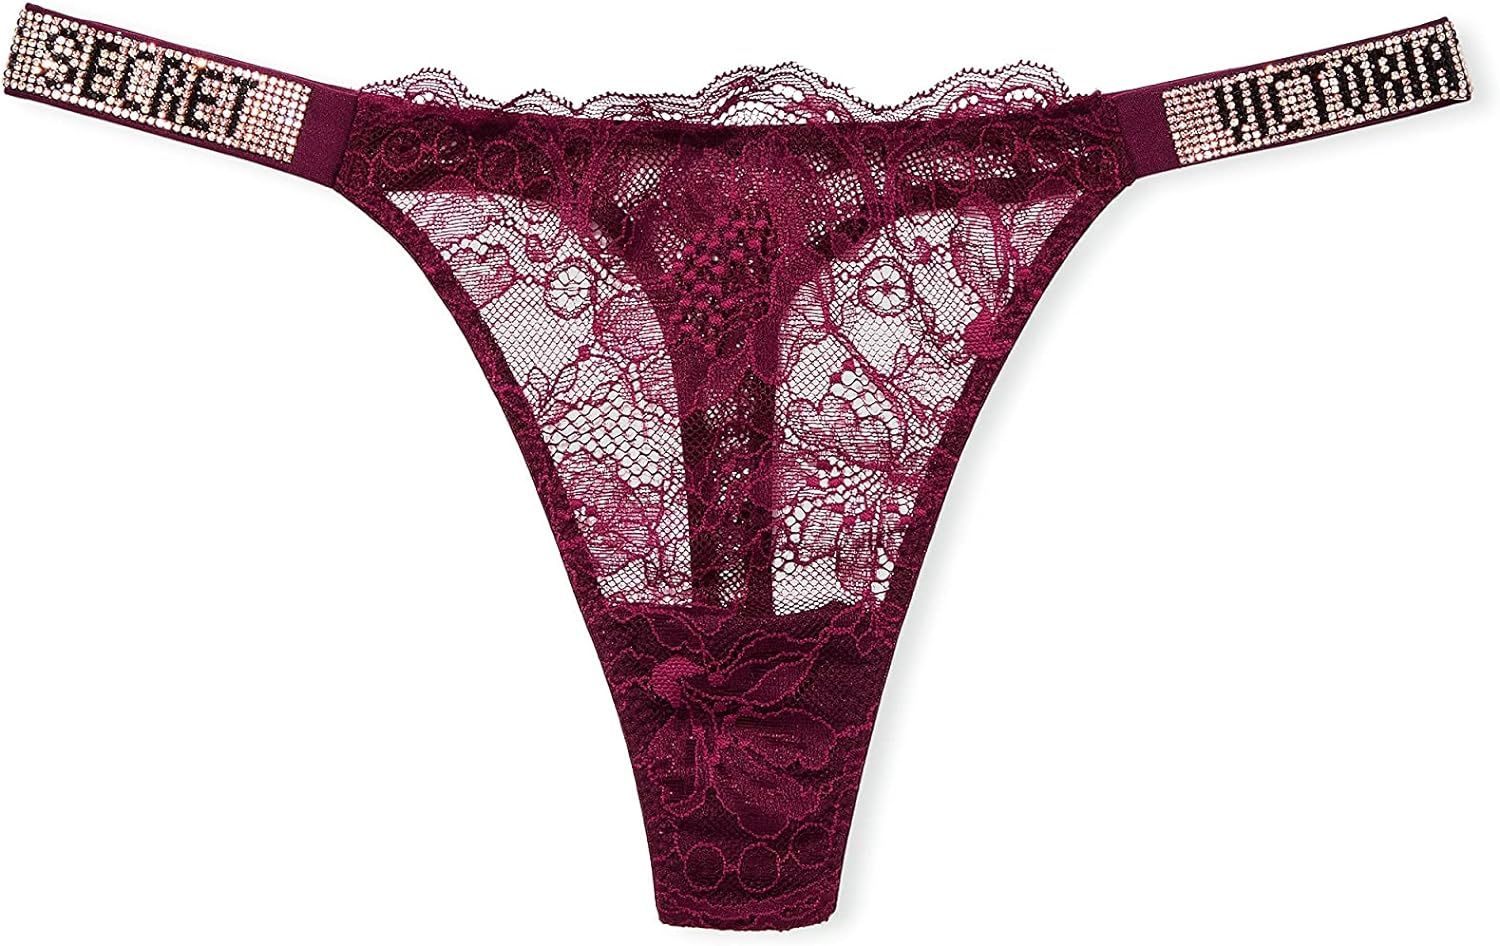 Victoria's Secret Shine Strap Thong, Underwear for Women (XS-XXL)